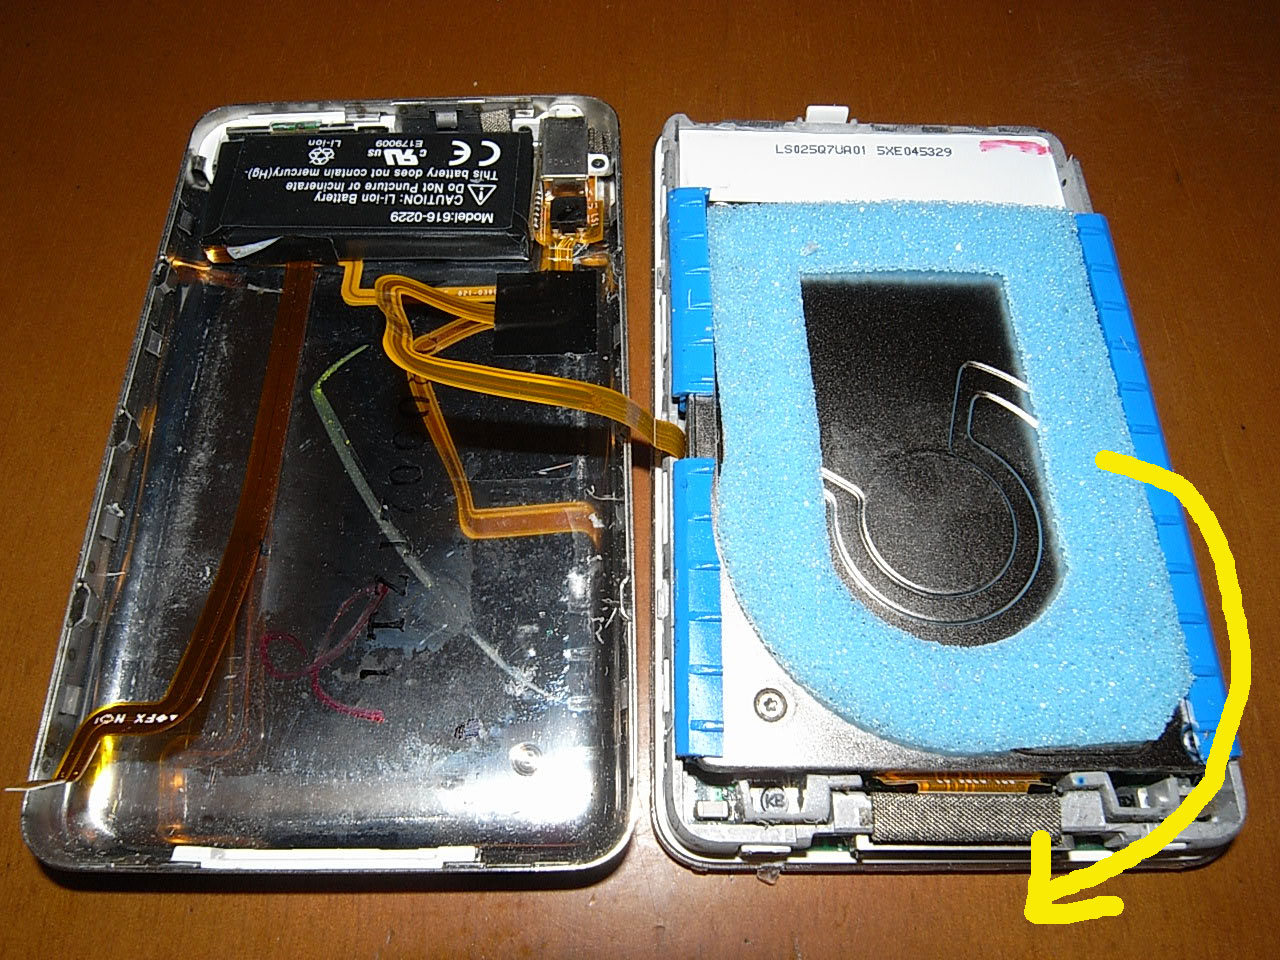 iFlash-Quadで第5世代iPod Classicを大容量化- iPod5Gの分解方法